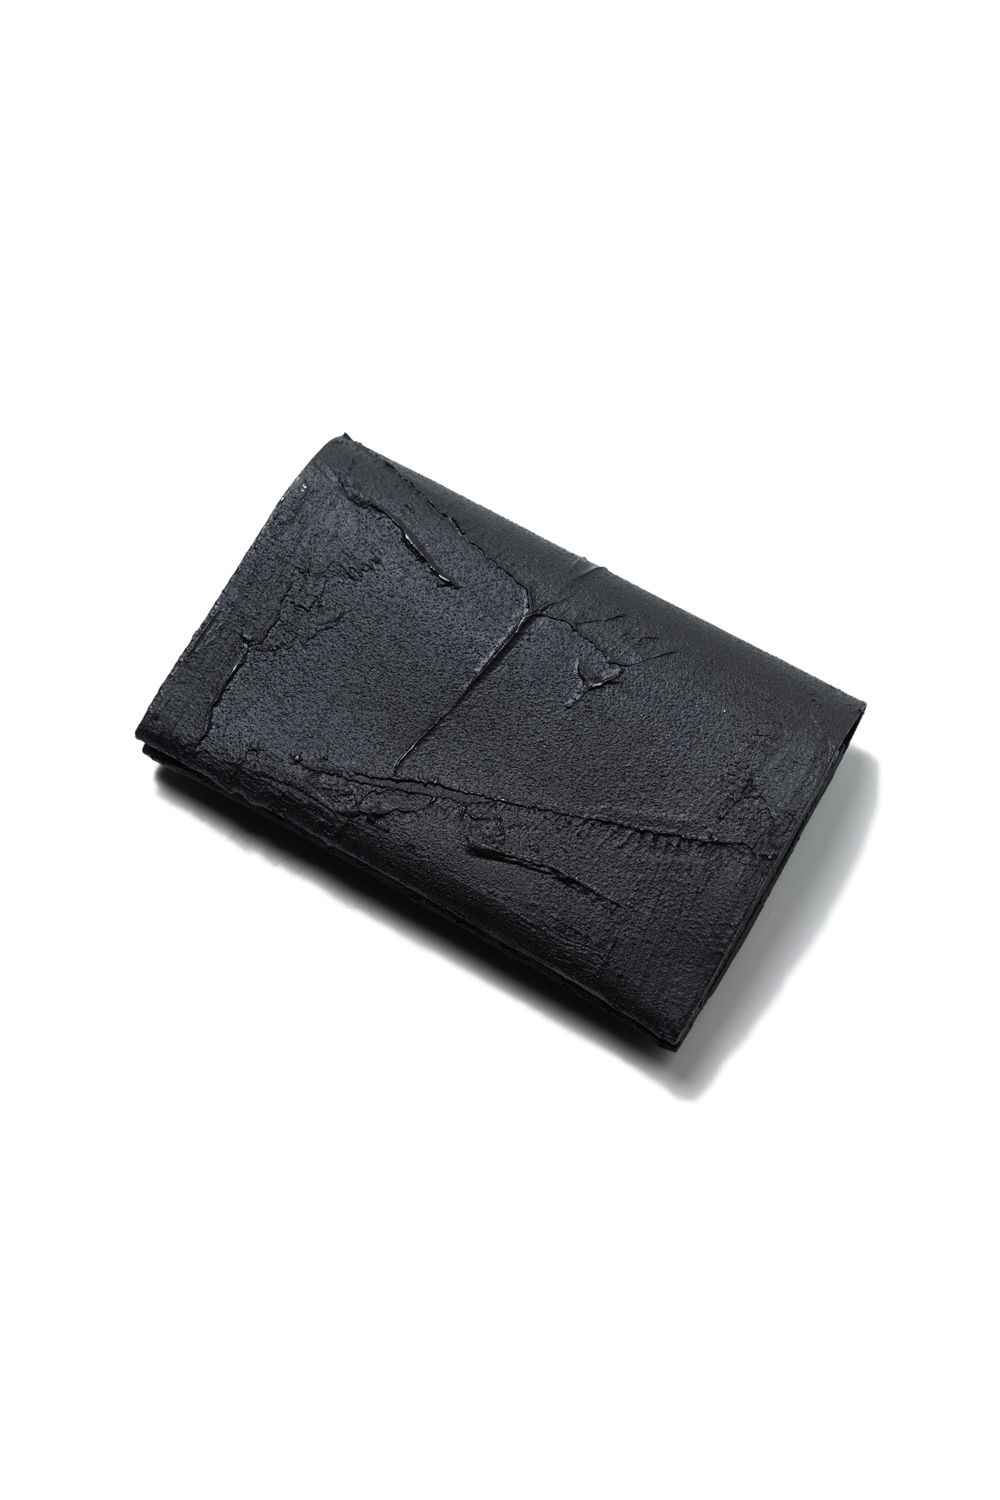 KAGARI YUSUKE - 二つ折り財布 [黒い壁] / mw13-bk | BONITA